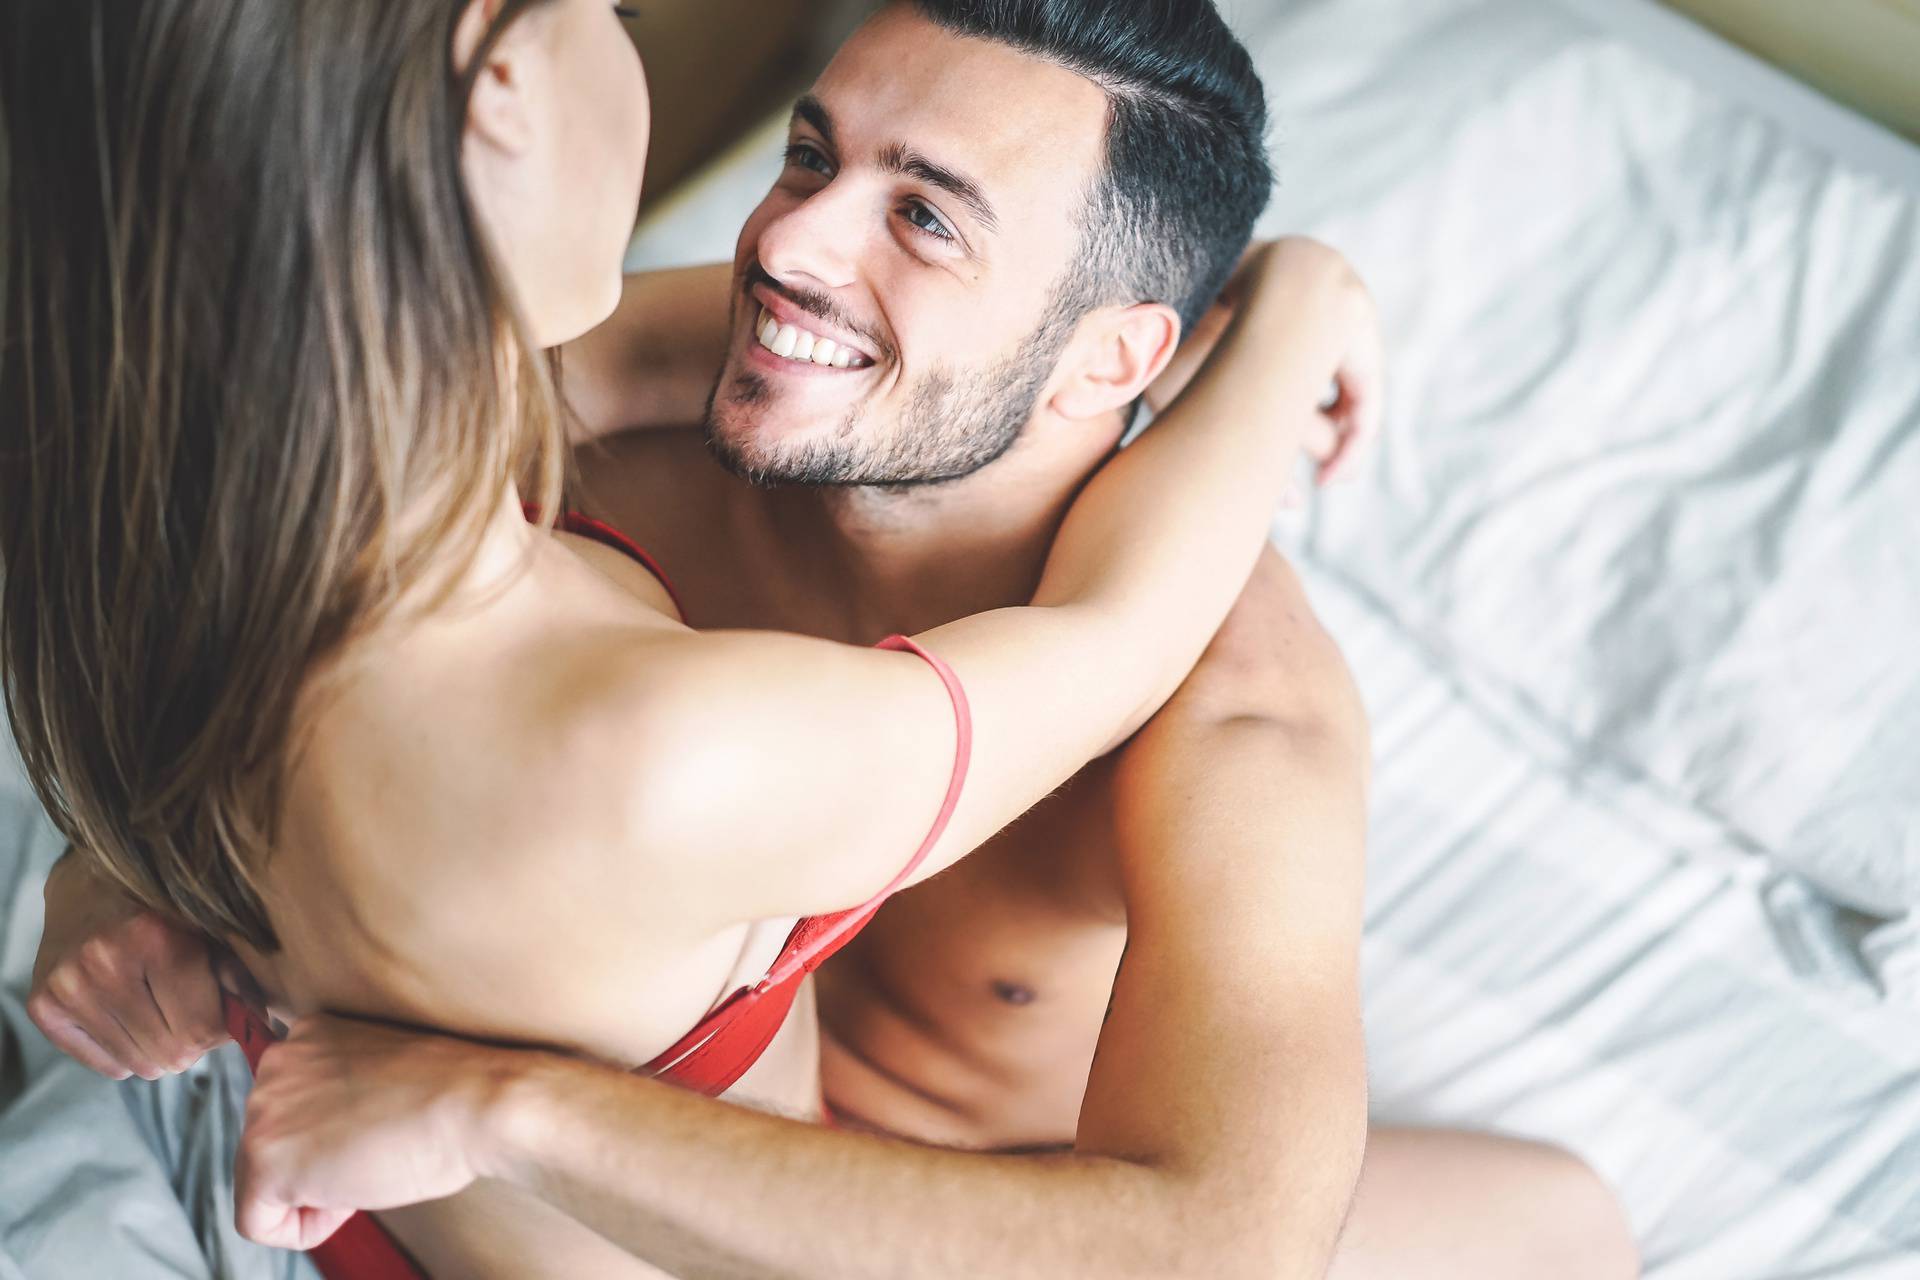 Riješite ovaj test s partnerom i vaš seksualni život može postati bolji nego što je to ikada bio